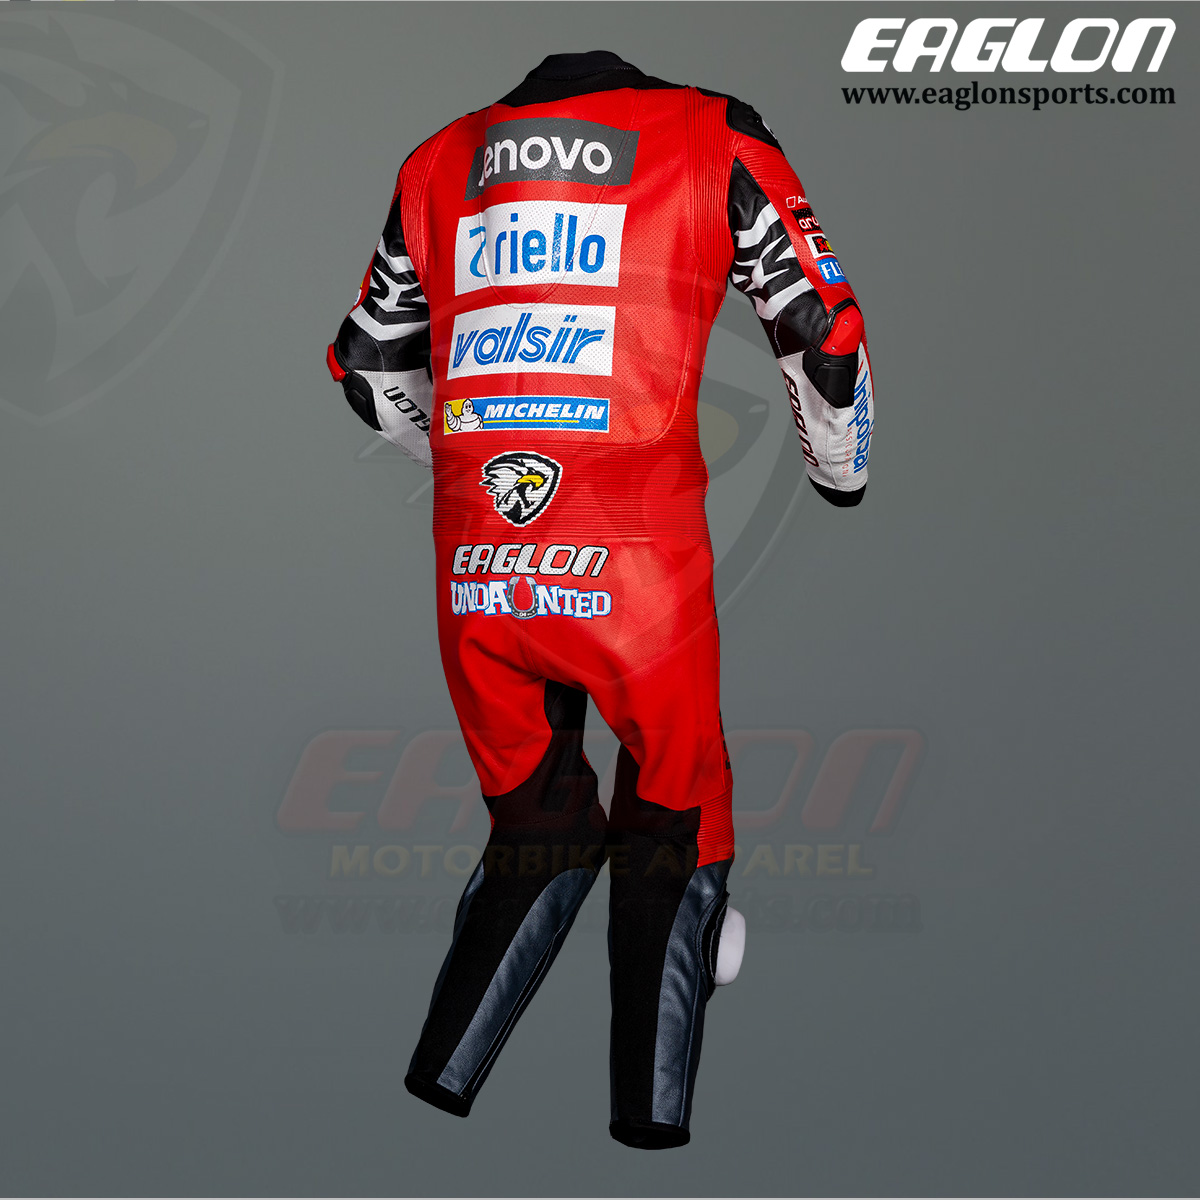 Andrea-Dovizioso-Ducati-MotoGP-2020-Leather-Race-Suit